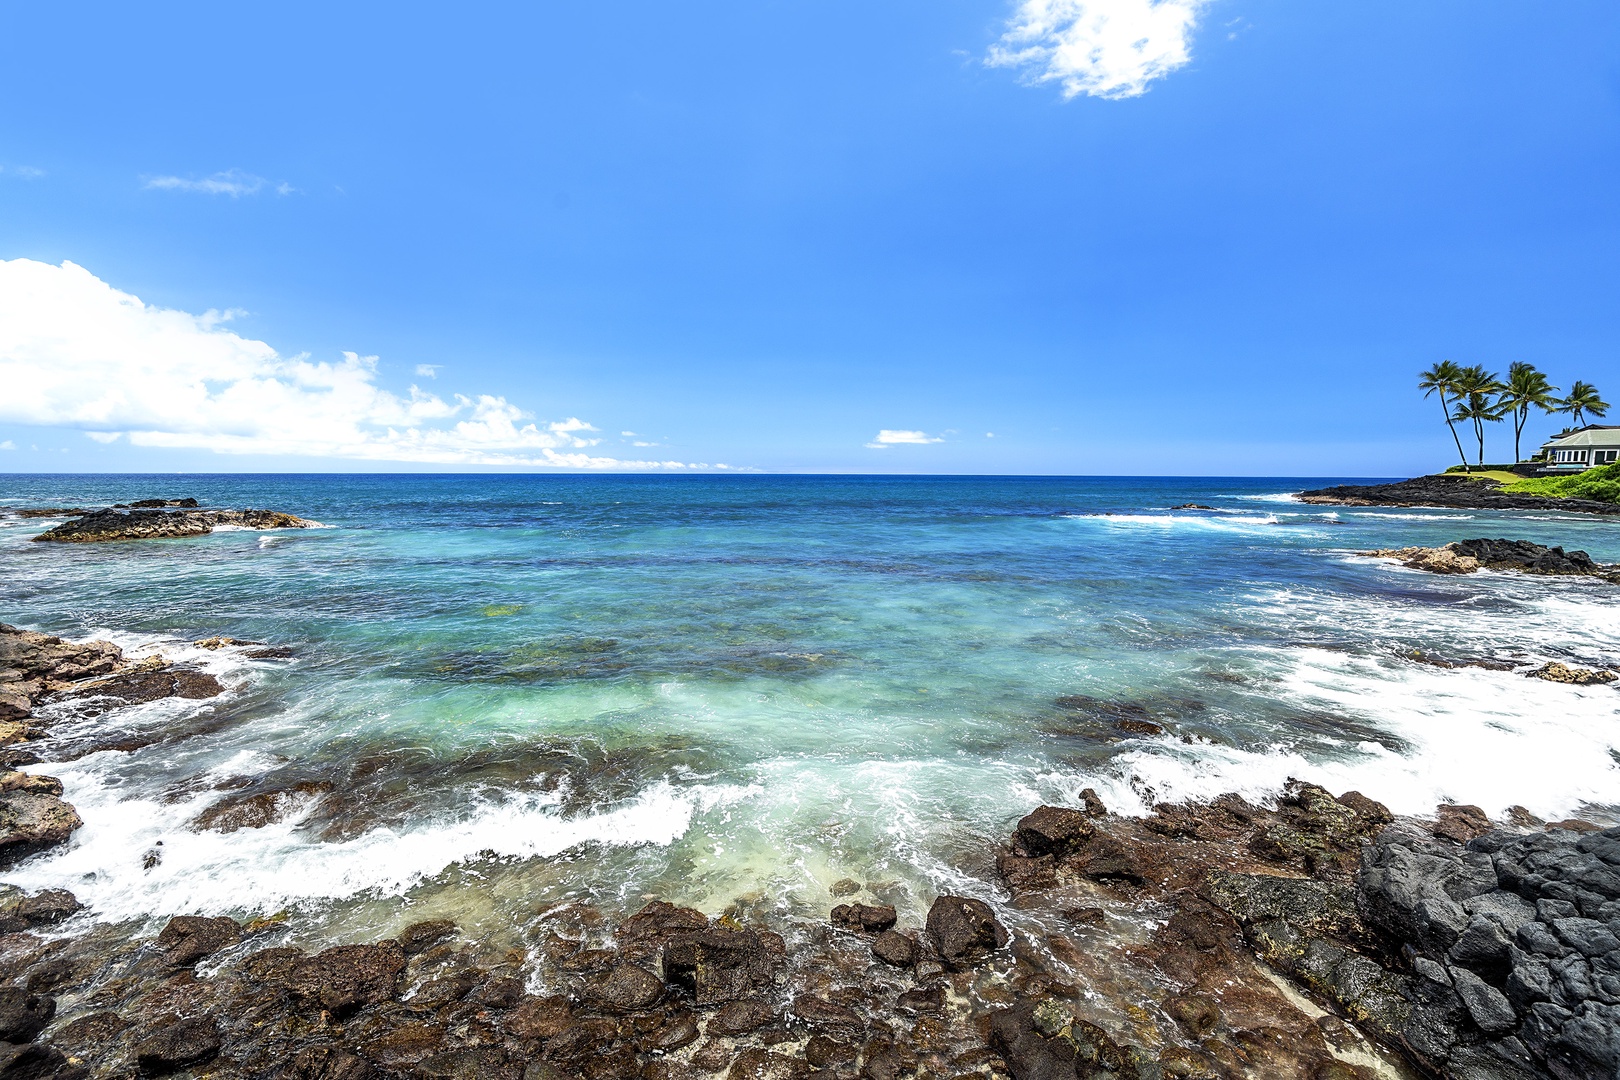 Kailua Kona Vacation Rentals, Hale Pua - Crystal blue waters!